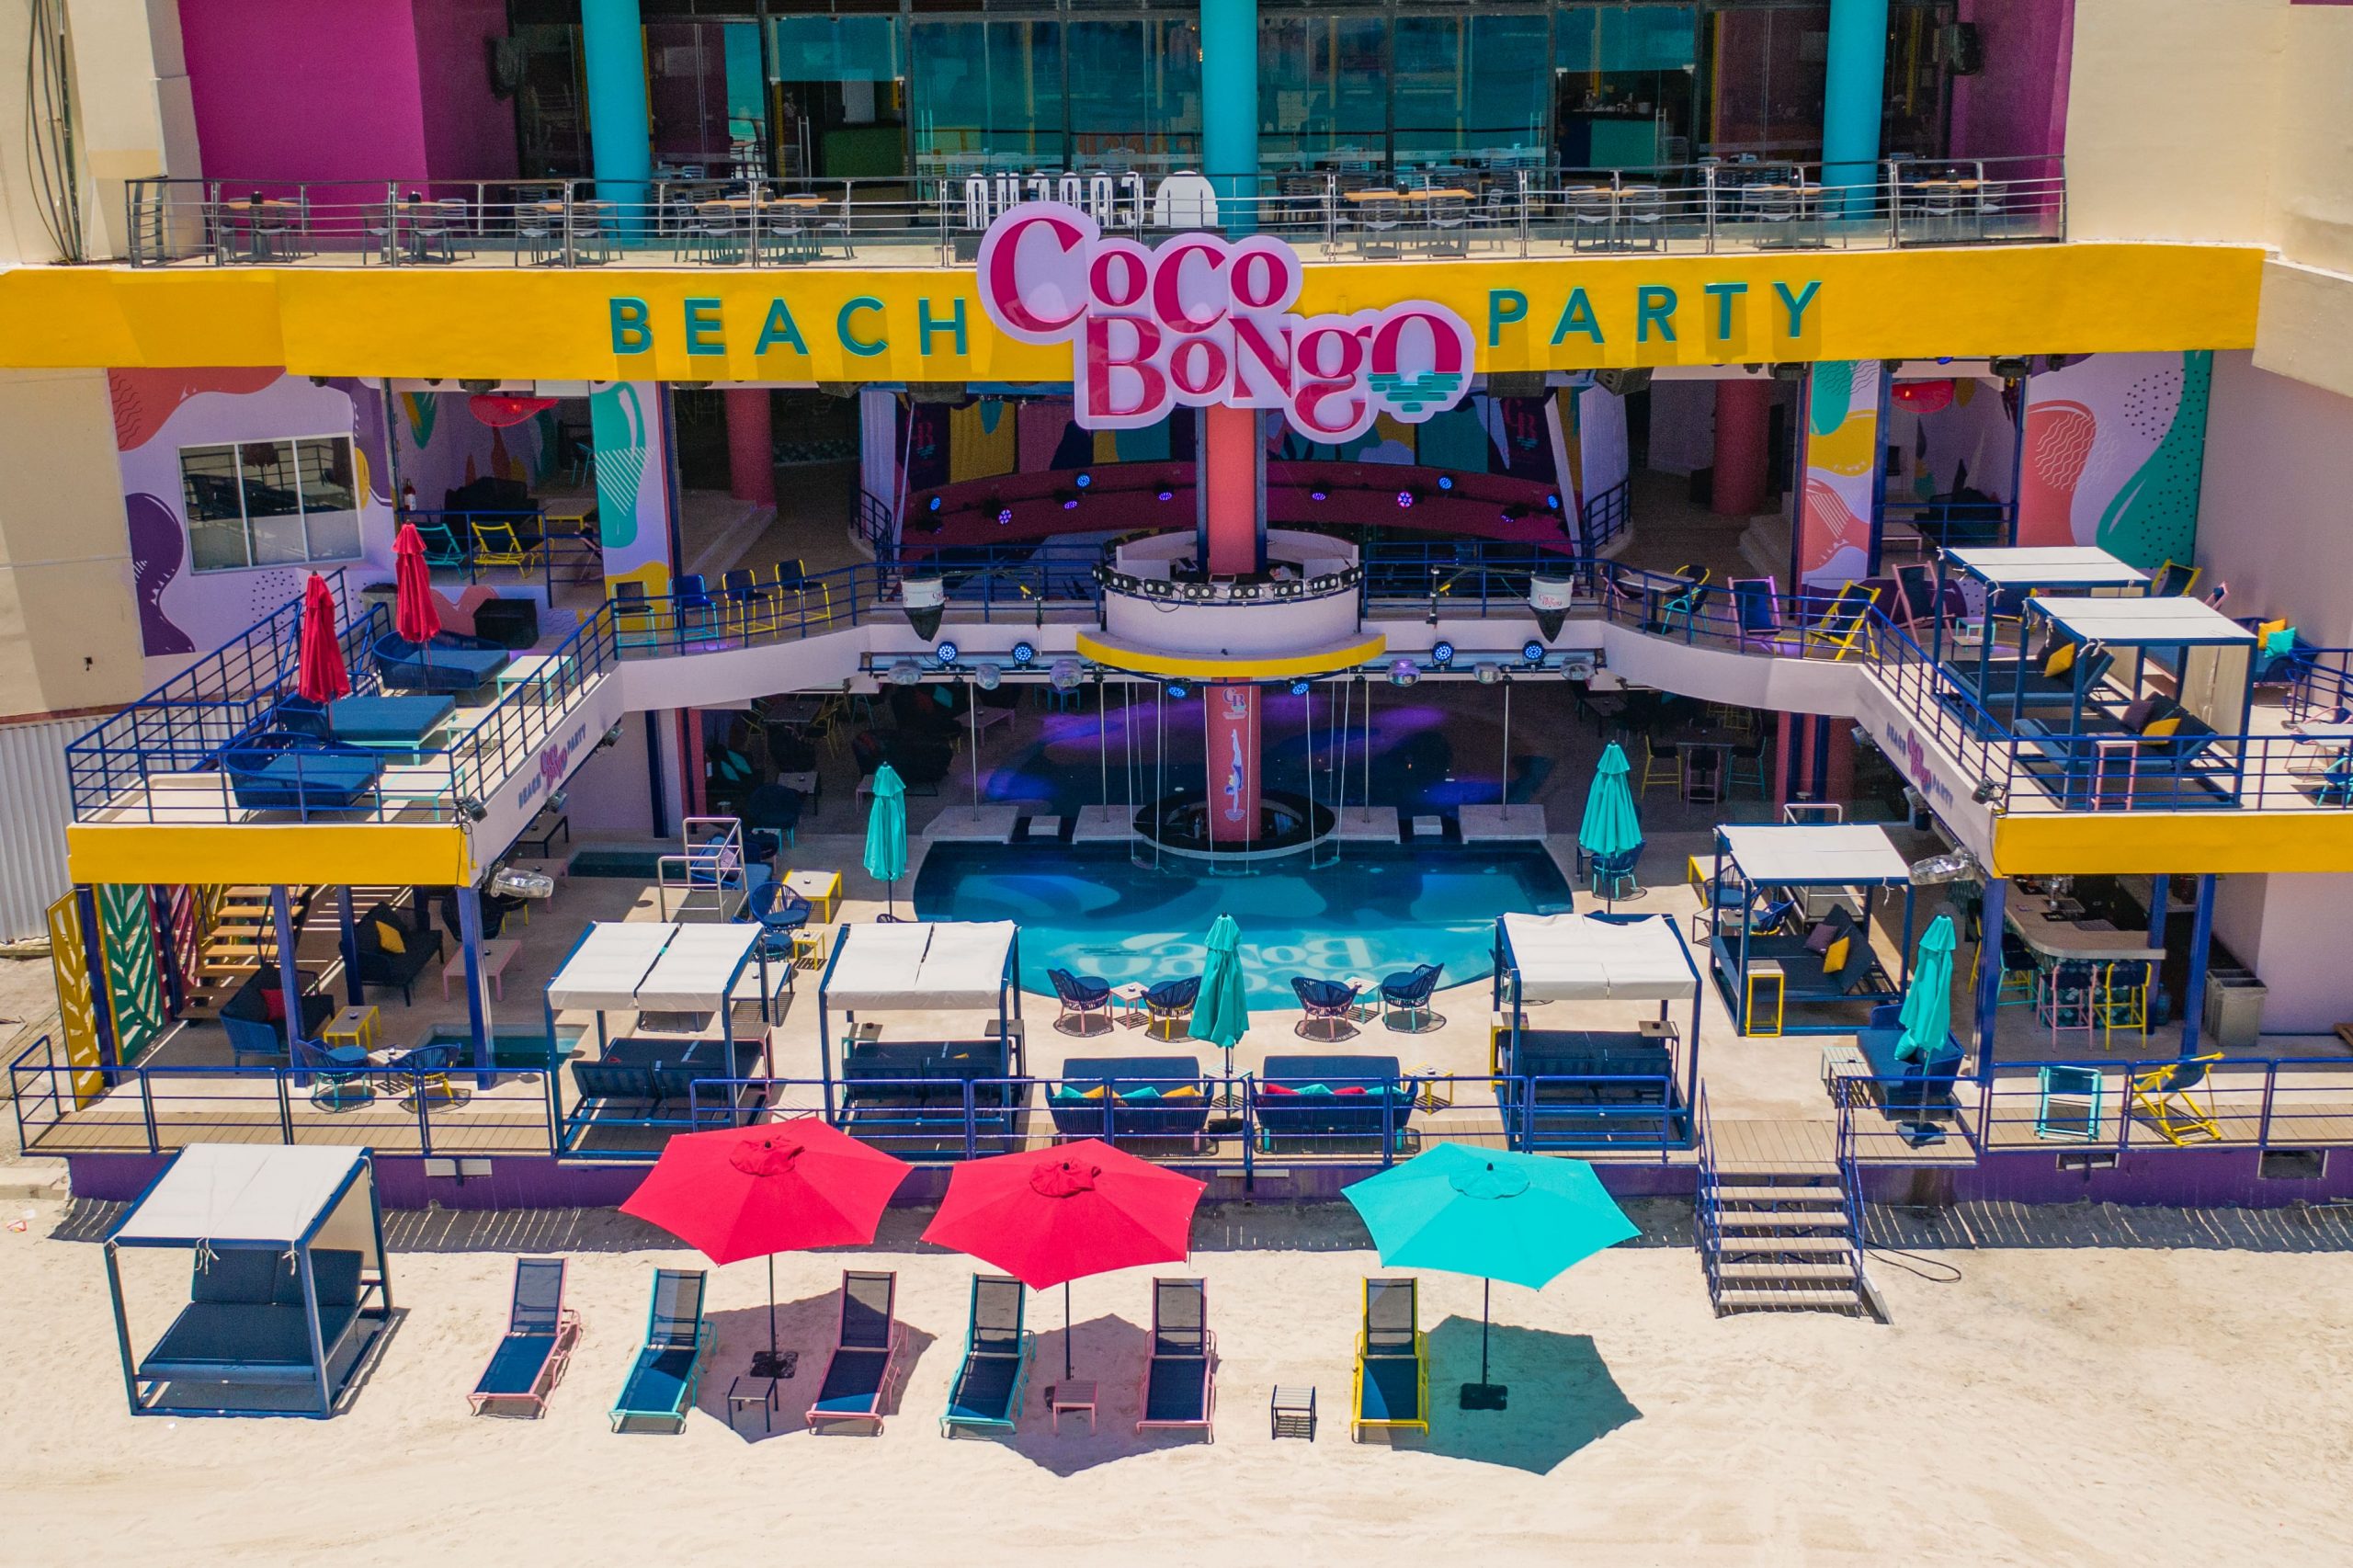 Guía para visitar el beach club Coco Bongo Beach Party